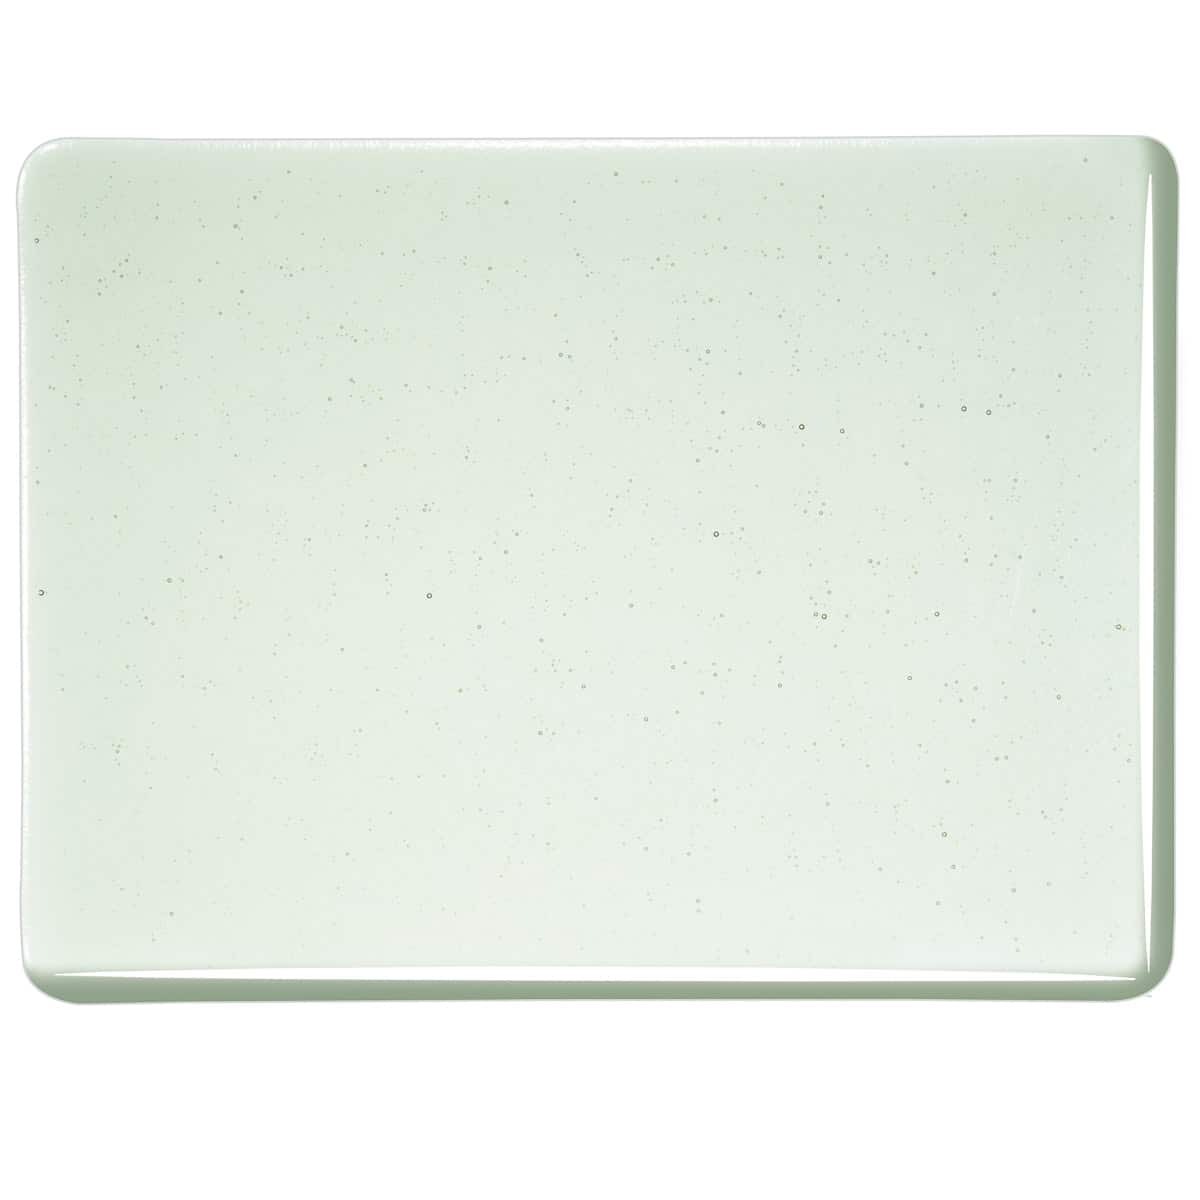 001841 Spruce Green Tint transparent sheet glass swatch